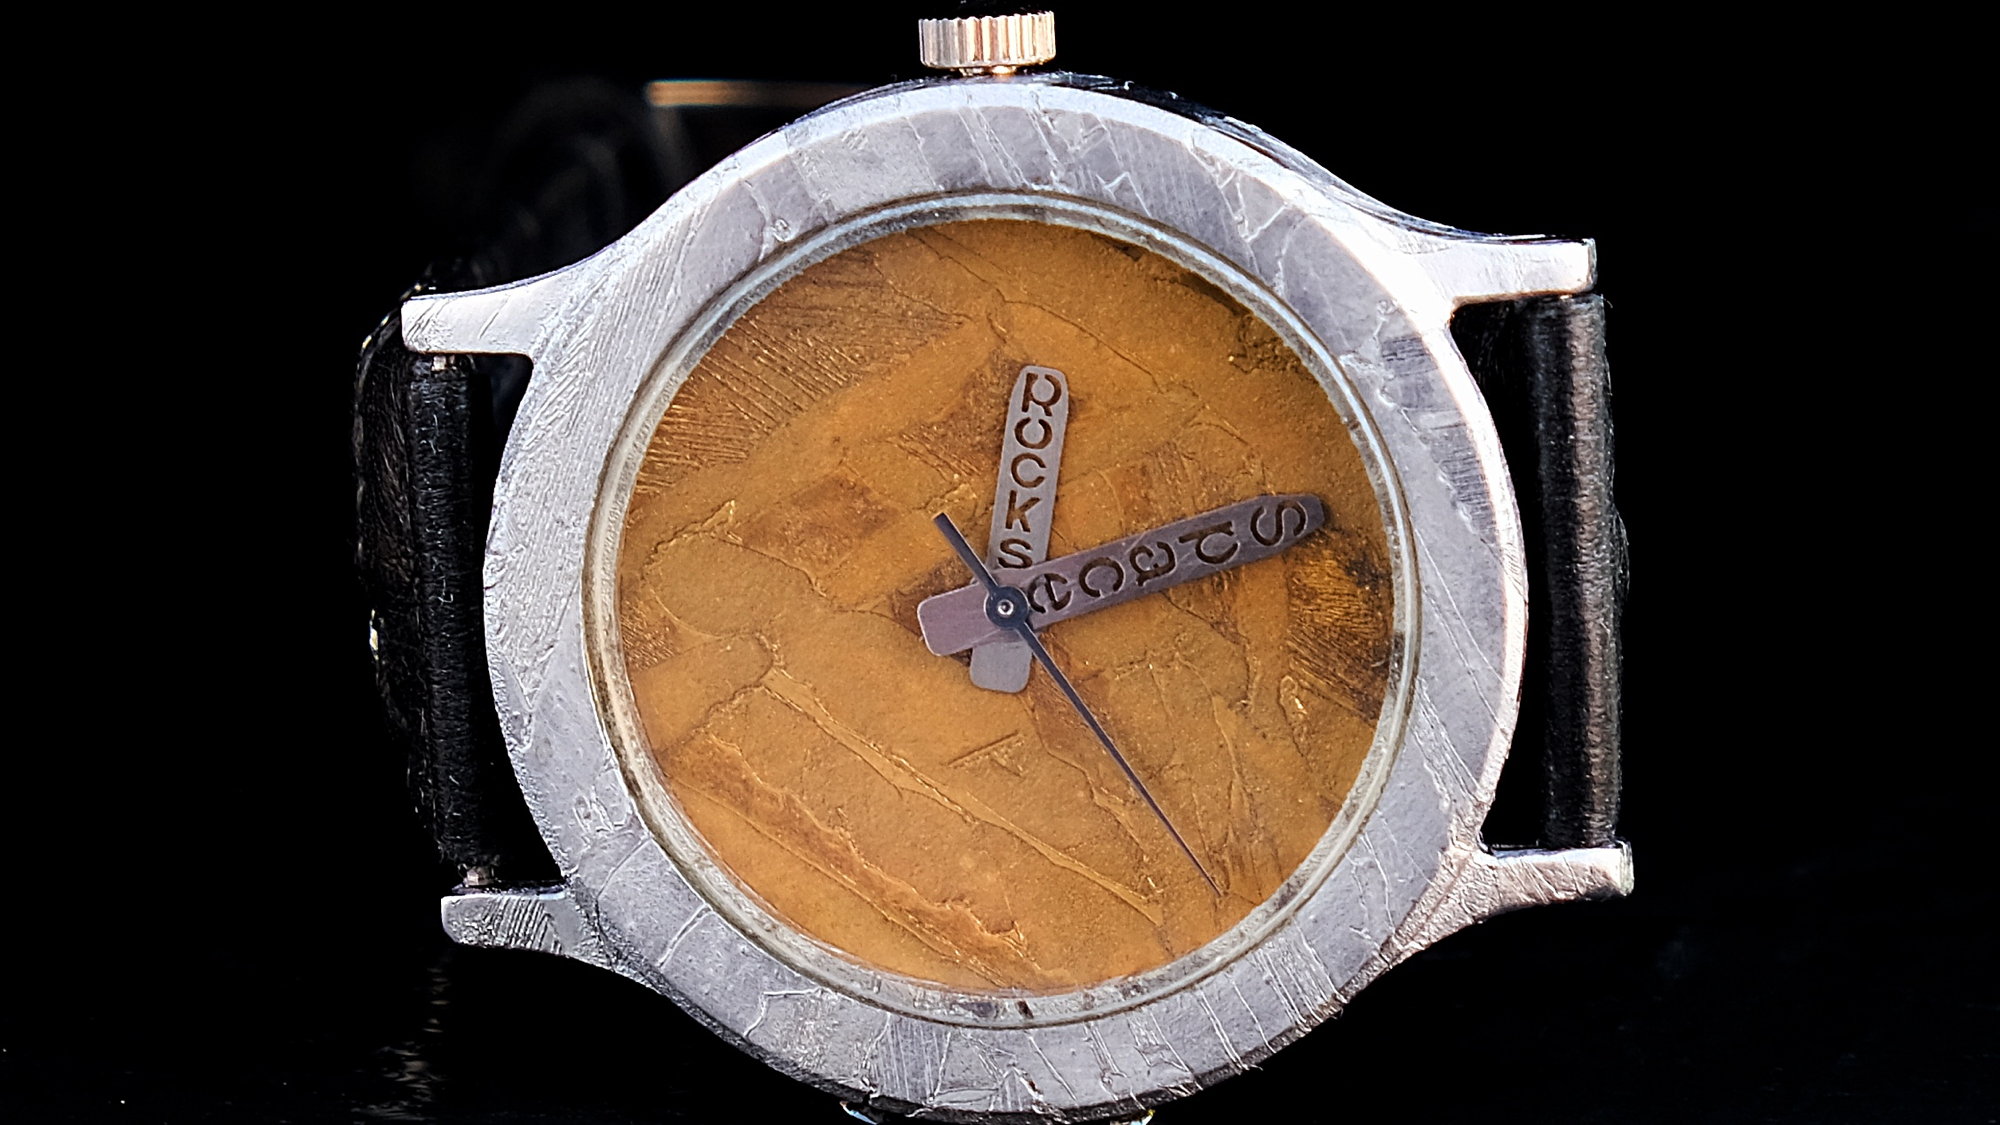 Original laguiole - Space Watch 04, Luxus Armbanduhr mit Metall-Meteoriten als Zifferblatt und Gehäuse